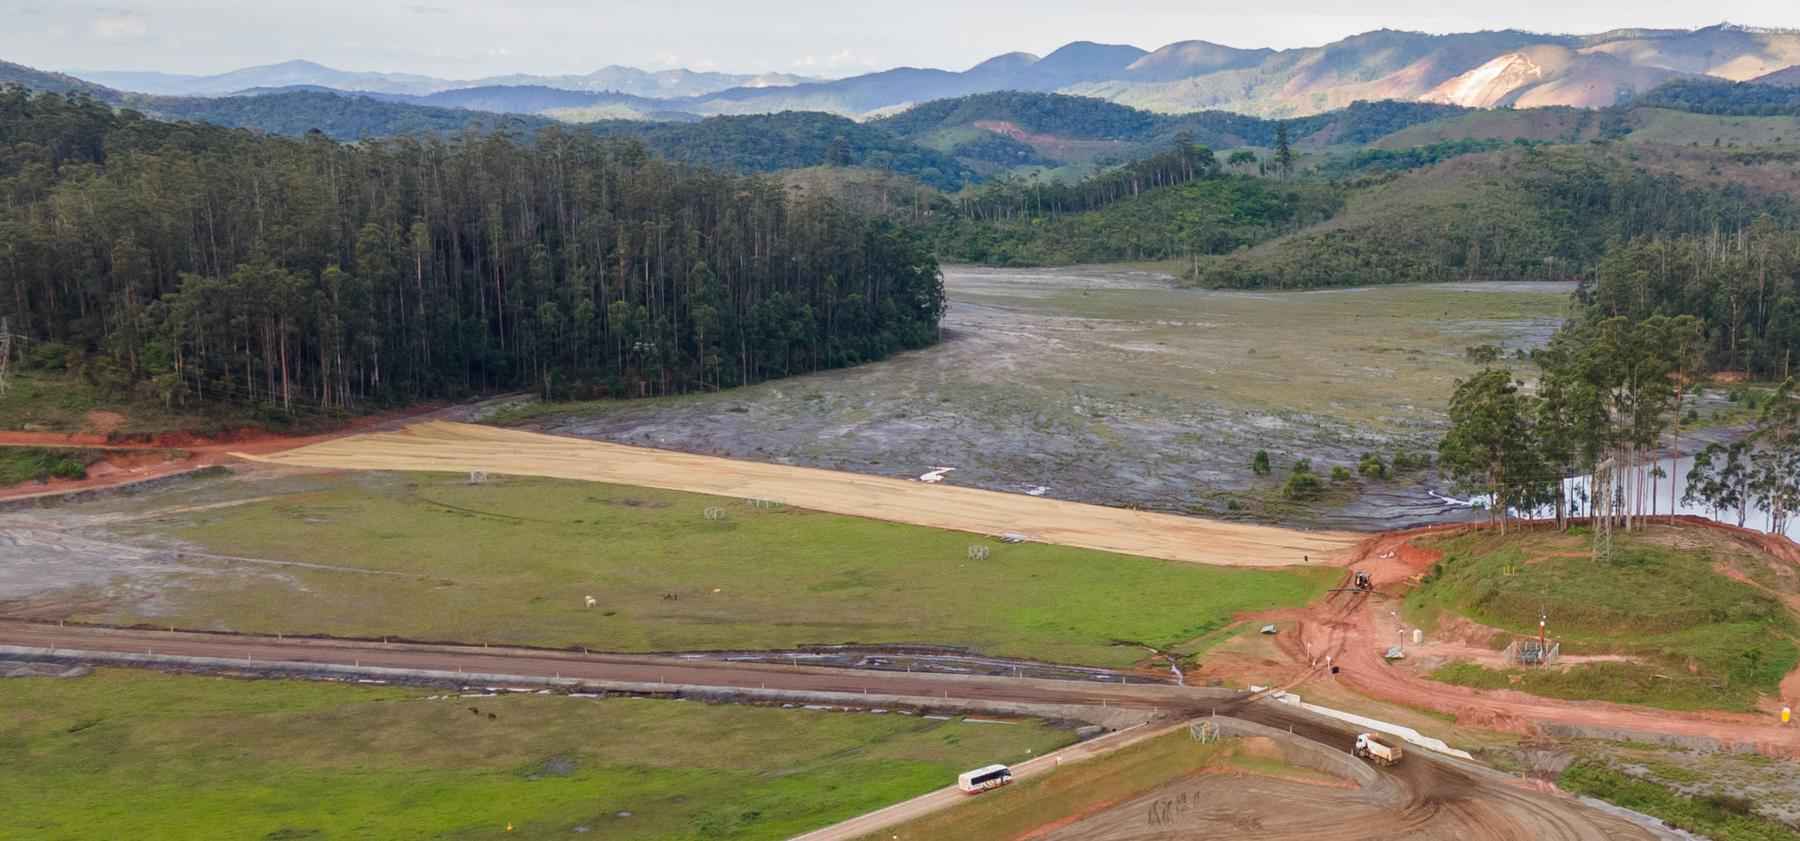 Sétima barragem do tipo de Mariana e Brumadinho é removida pela Vale - Divulgação/Vale